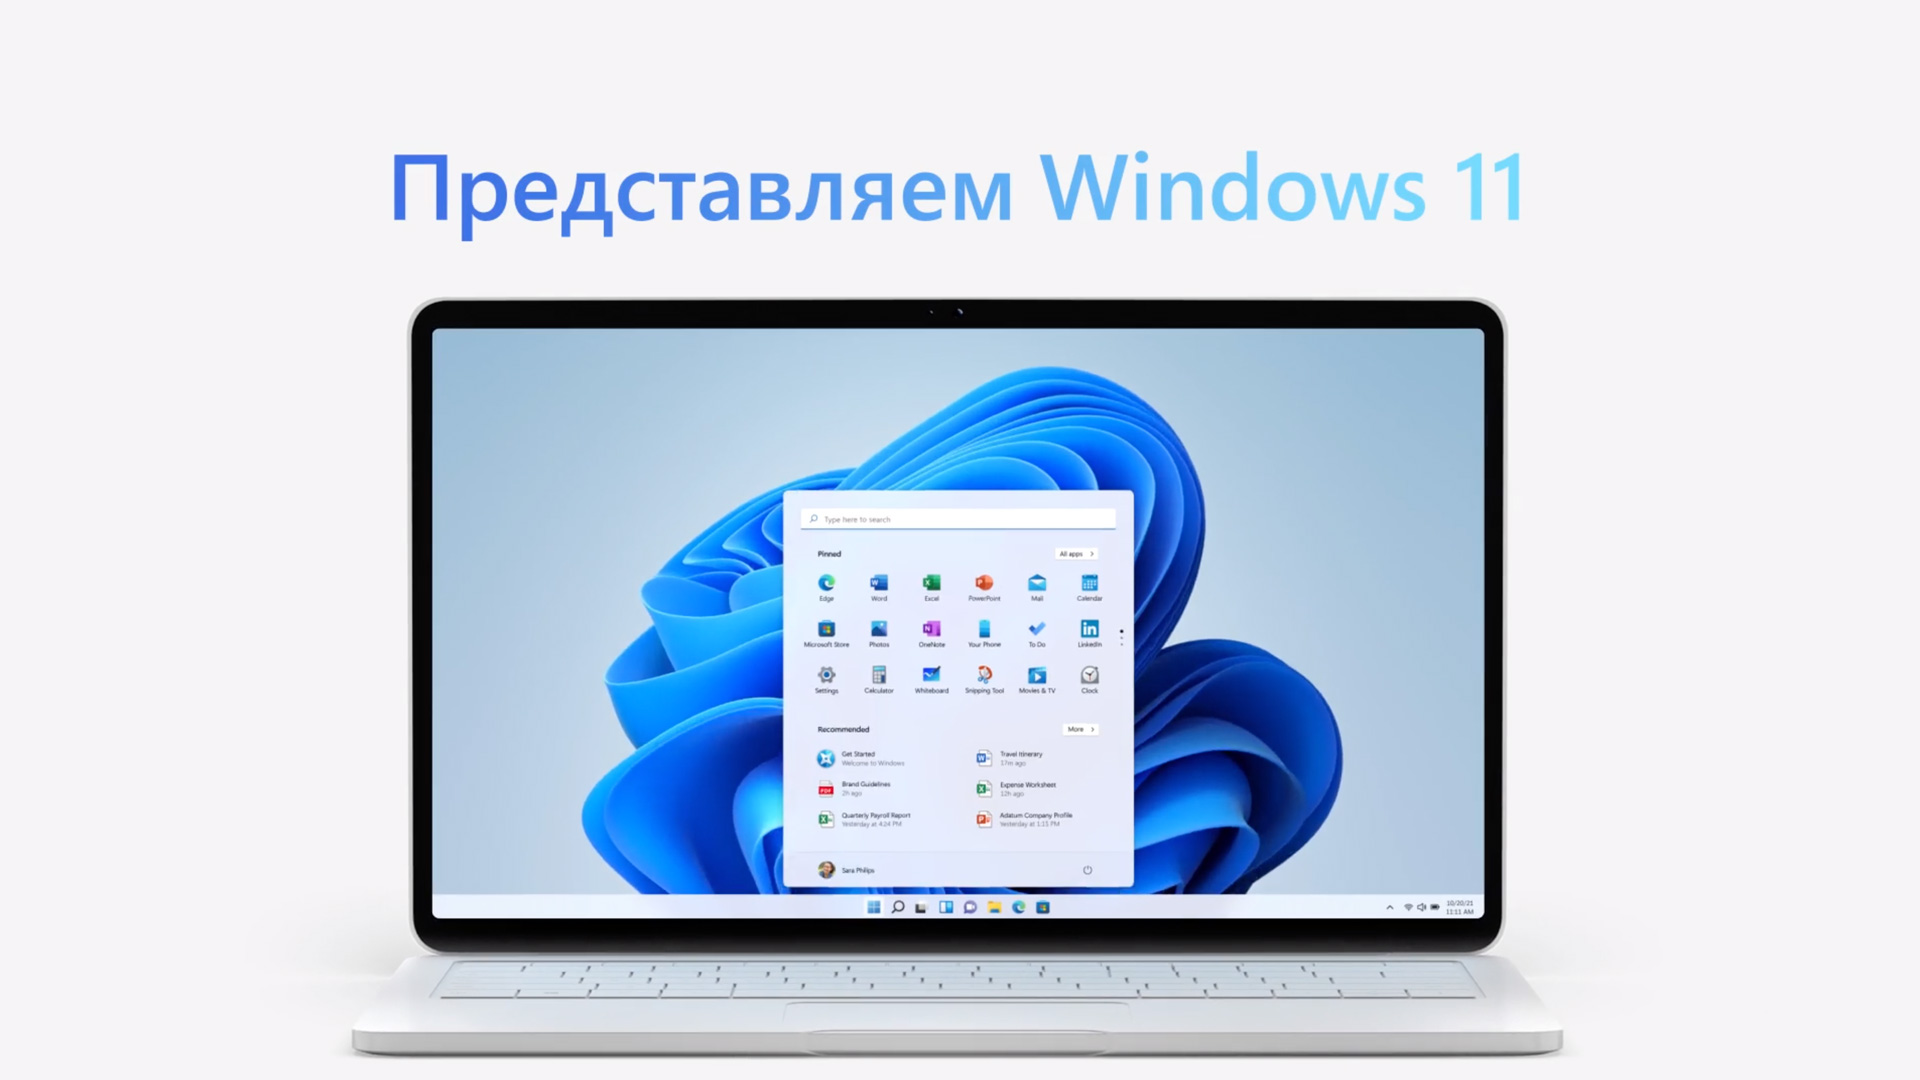 Проверить Ноутбук На Совместимость С Windows 10